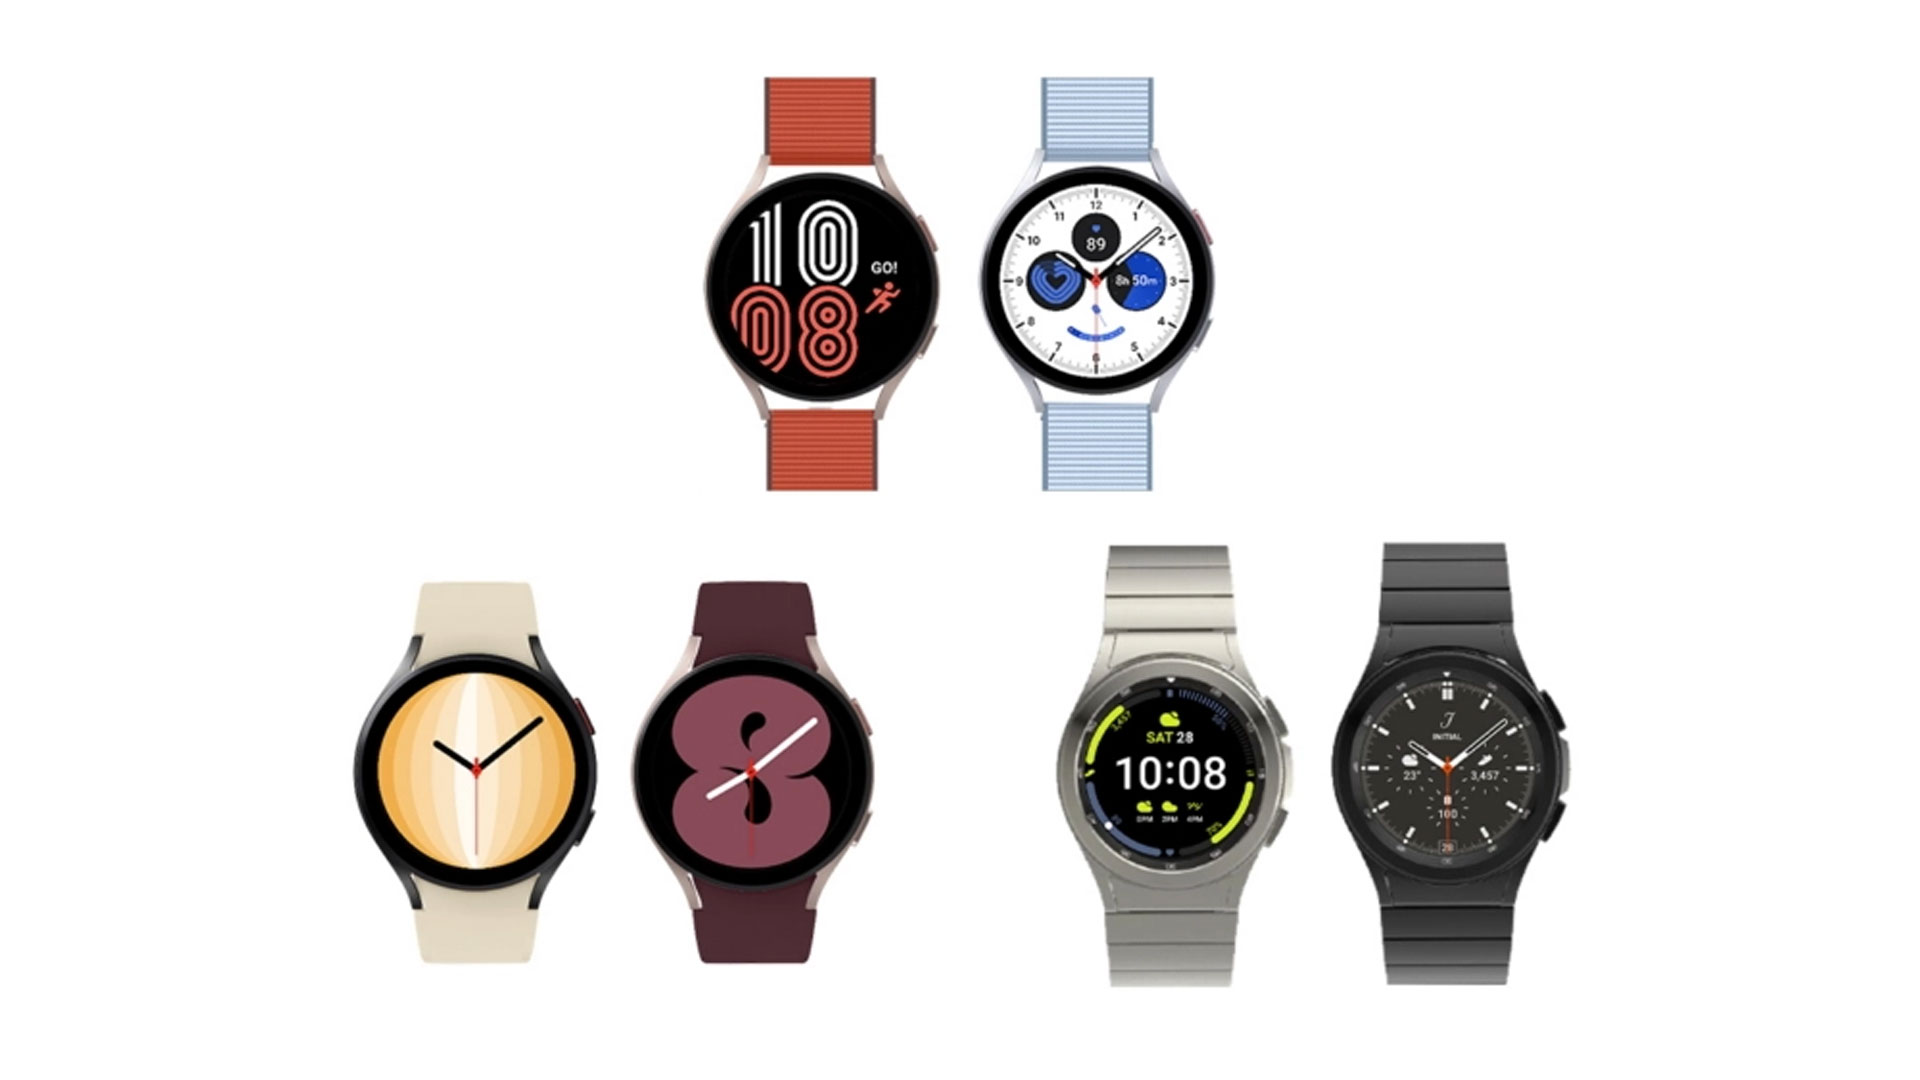 Tìm kiếm giao diện đồng hồ tuyệt vời nhất? Chúng tôi đã thu thập các giao diện đồng hồ đẹp nhất cho Samsung Galaxy Watch của bạn. Các giao diện đồng hồ độc đáo và đa dạng này sẽ giúp bạn tạo ra một phong cách của riêng mình. Nhấp vào hình ảnh để khám phá các lựa chọn tuyệt vời và thể hiện phong cách của bạn.